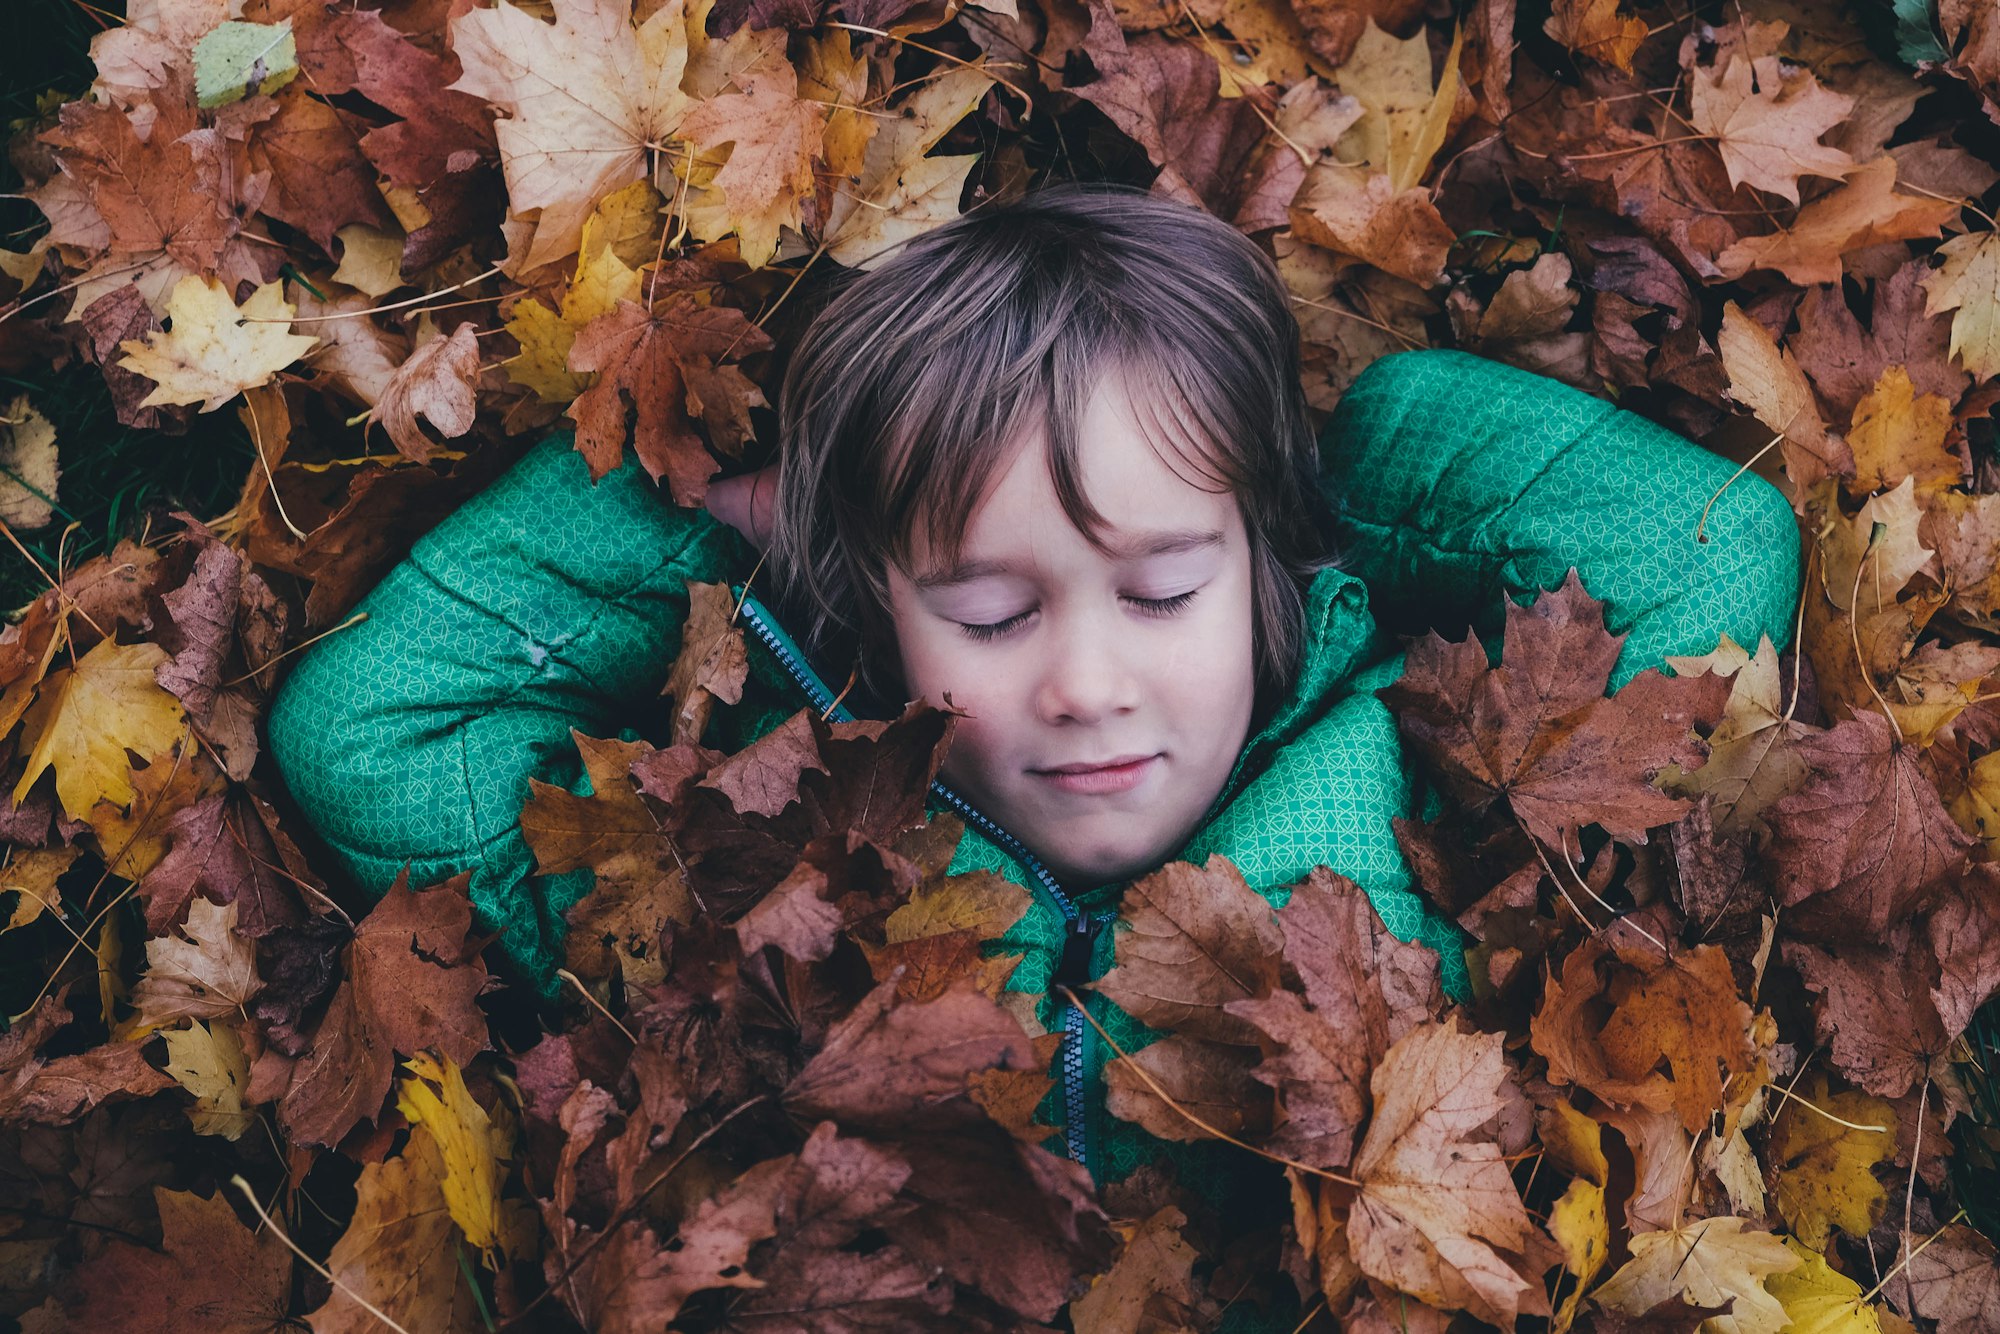 Boy under a leaf blanket